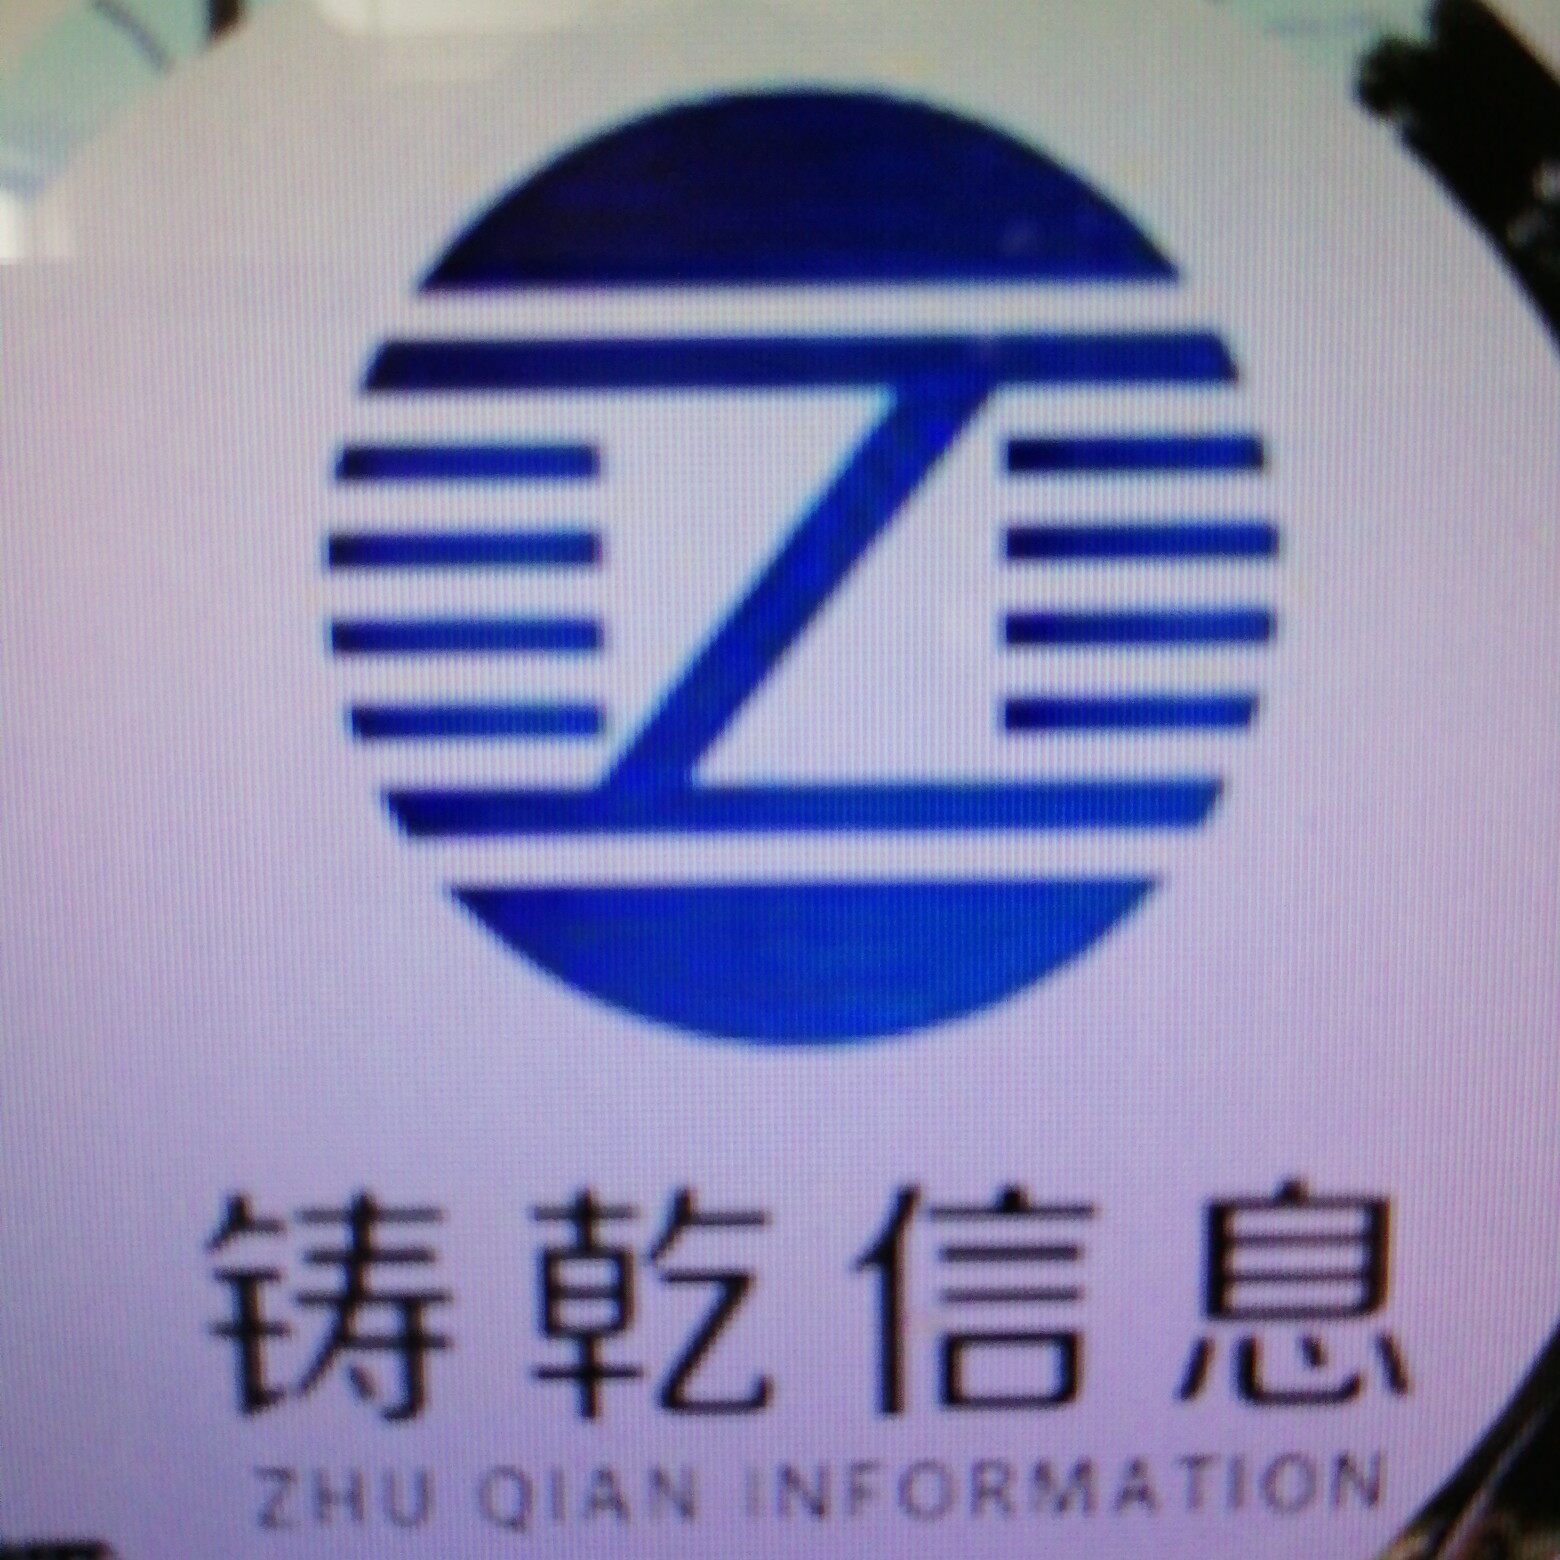 上海铸乾信息科技有限公司logo